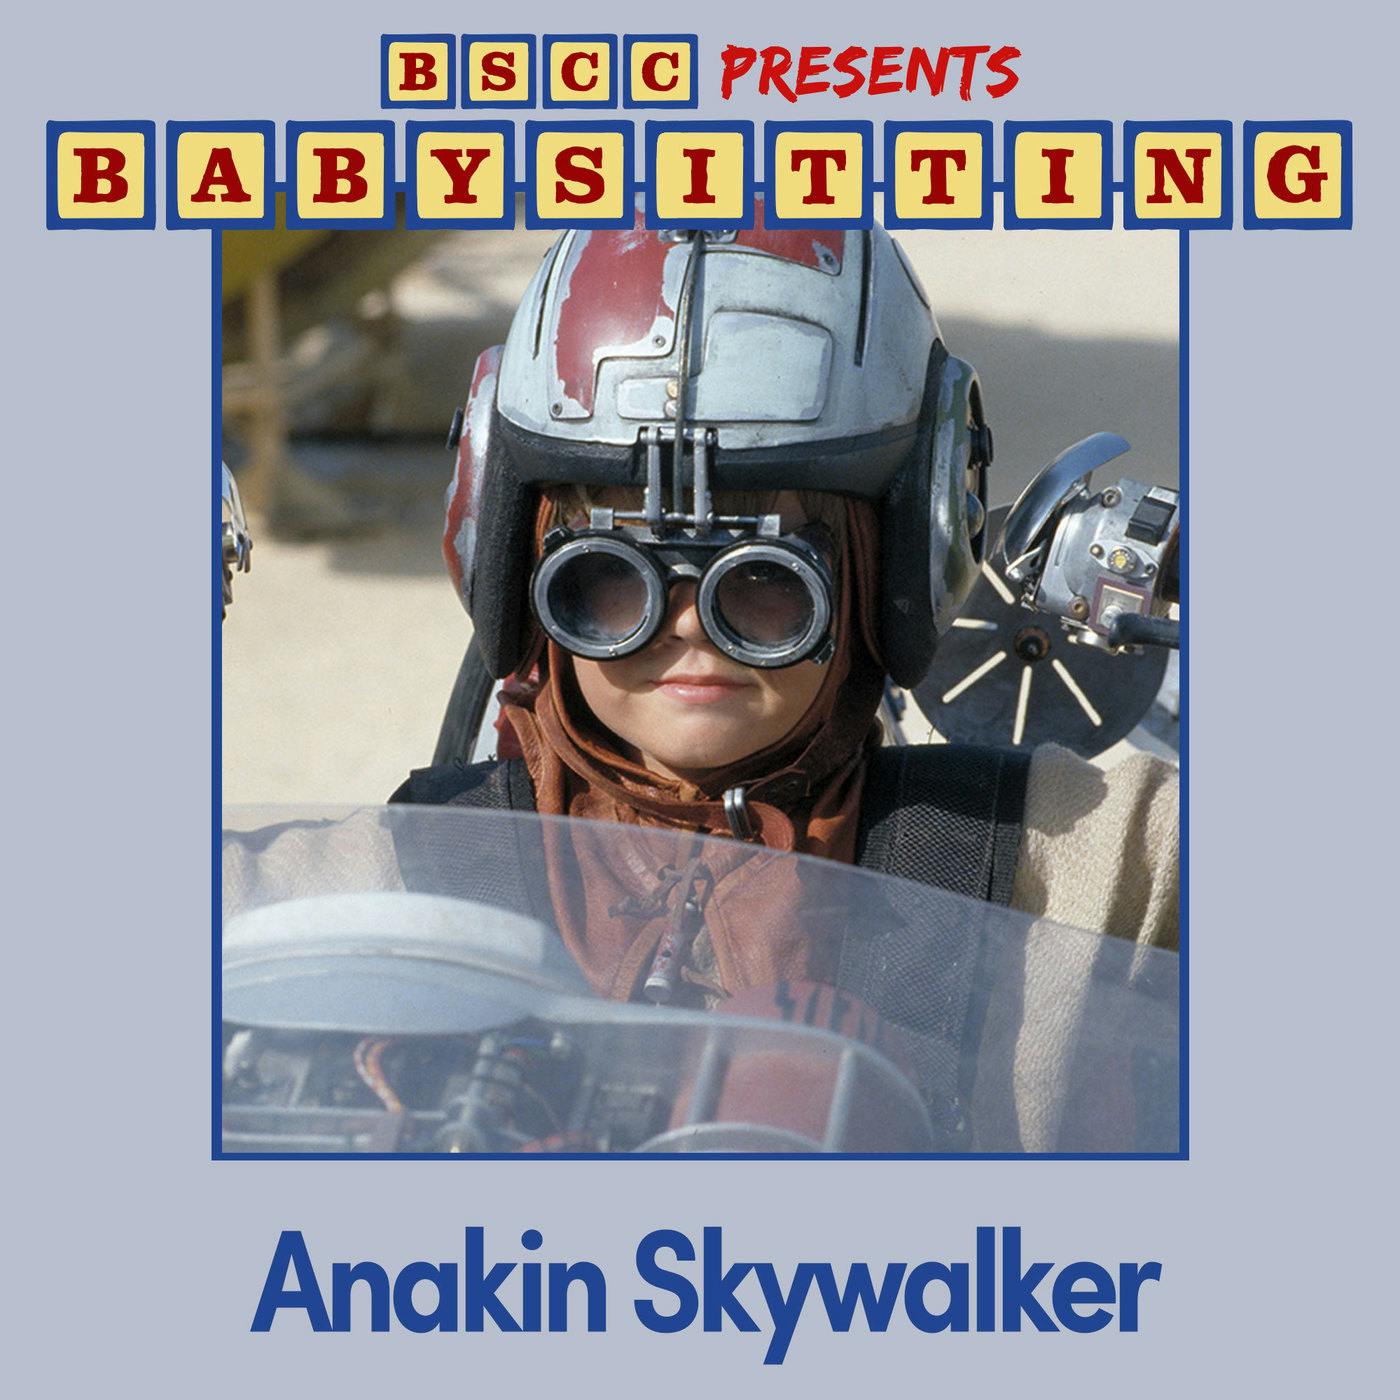 BSCC Presents: Babysitting Anakin Skywalker